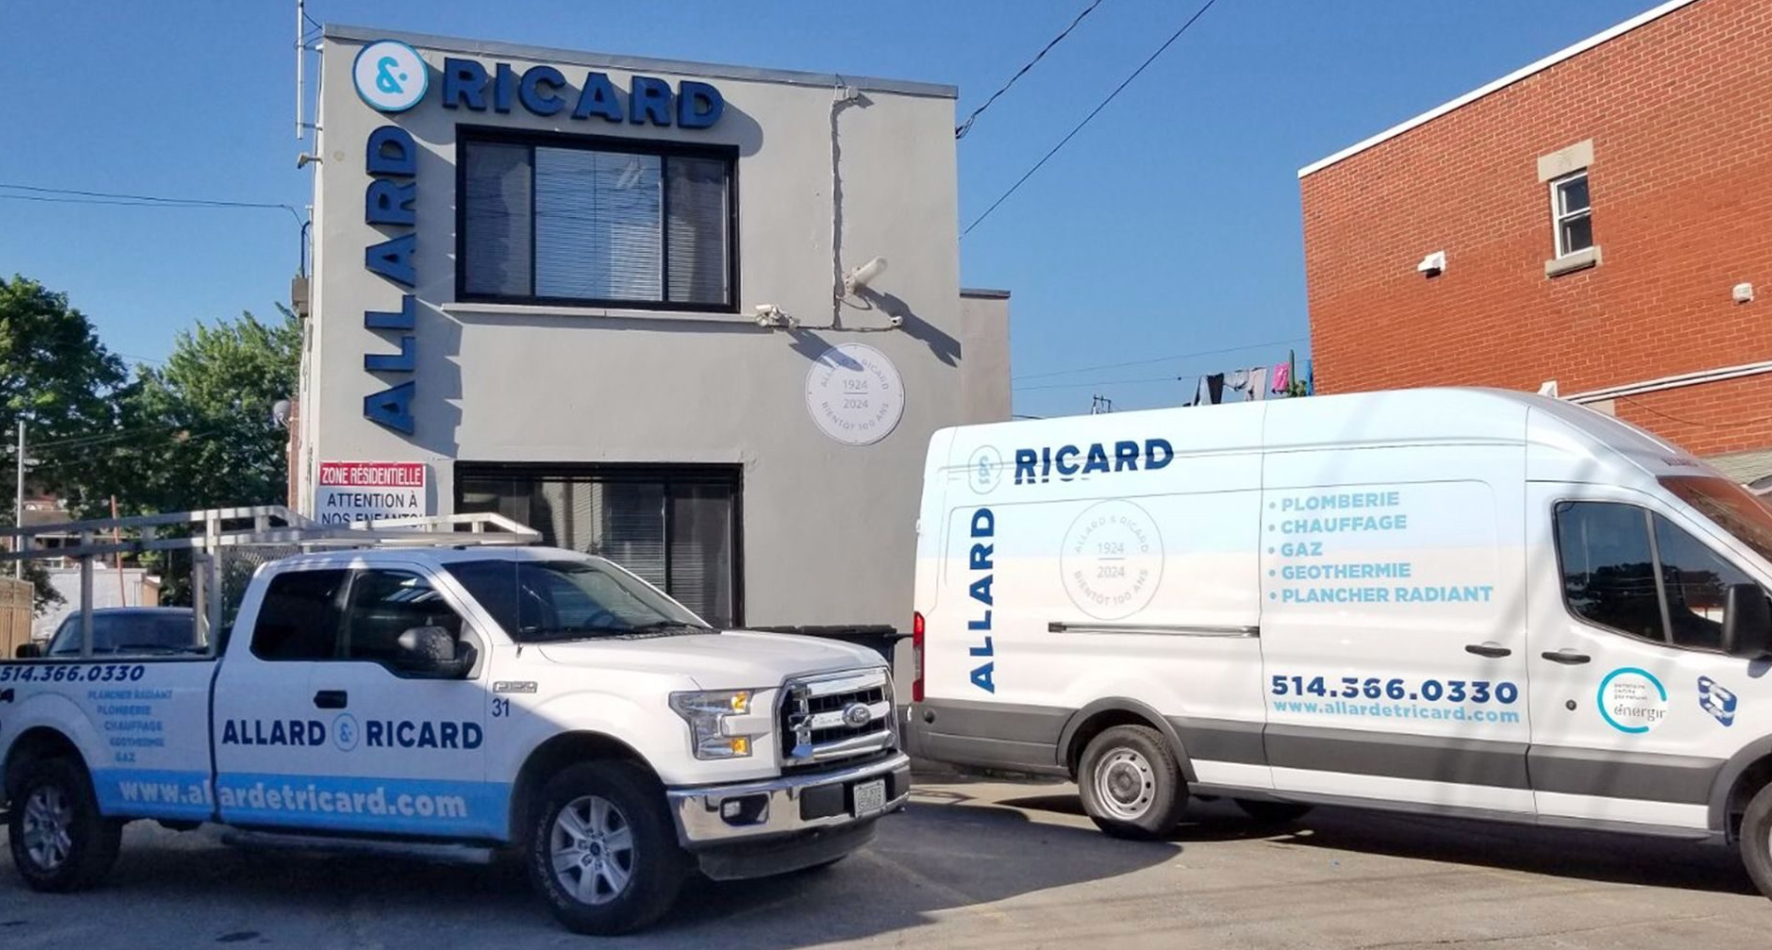 Allard and Ricard Plumbing Inc.